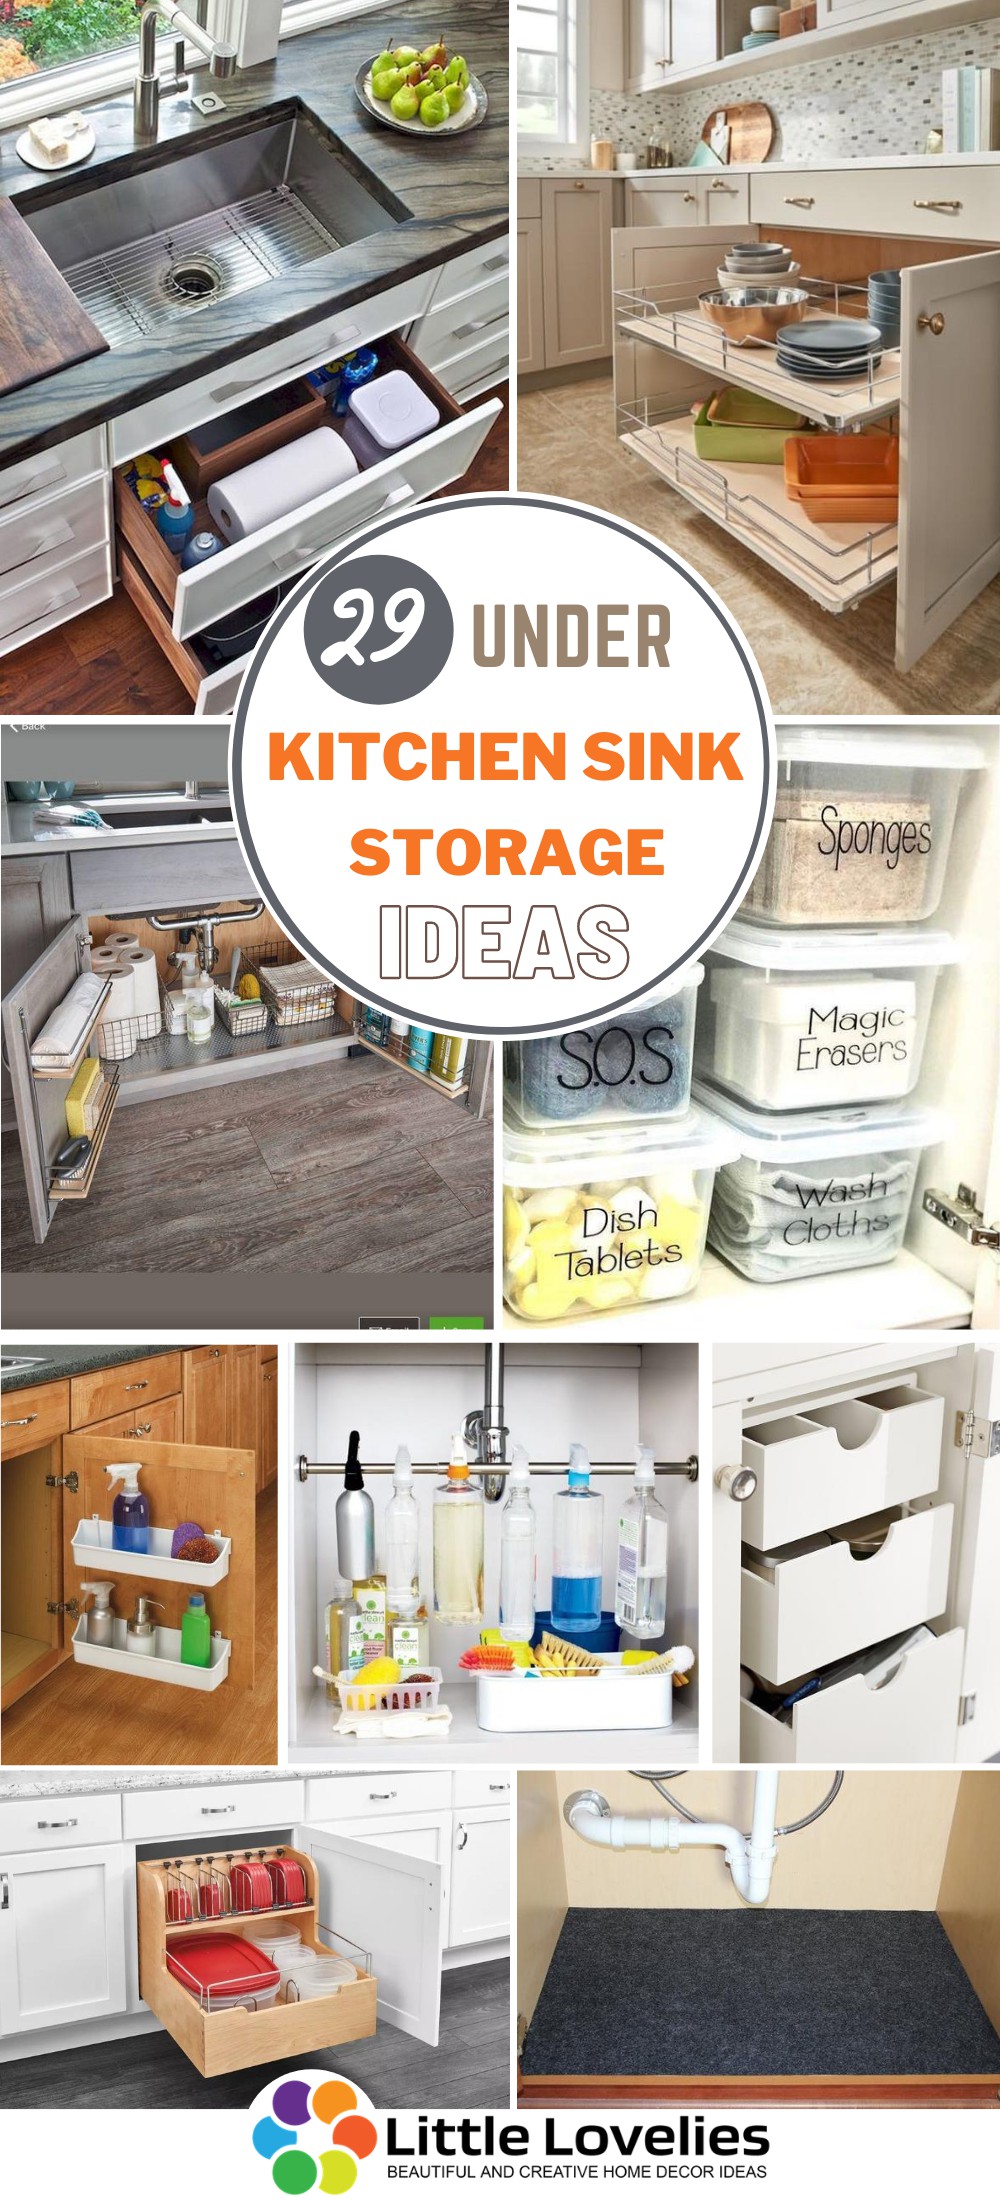 https://www.littleloveliesbyallison.com/wp-content/uploads/2020/08/Best-Under-Kitchen-Sink-Storage-Ideas.jpg